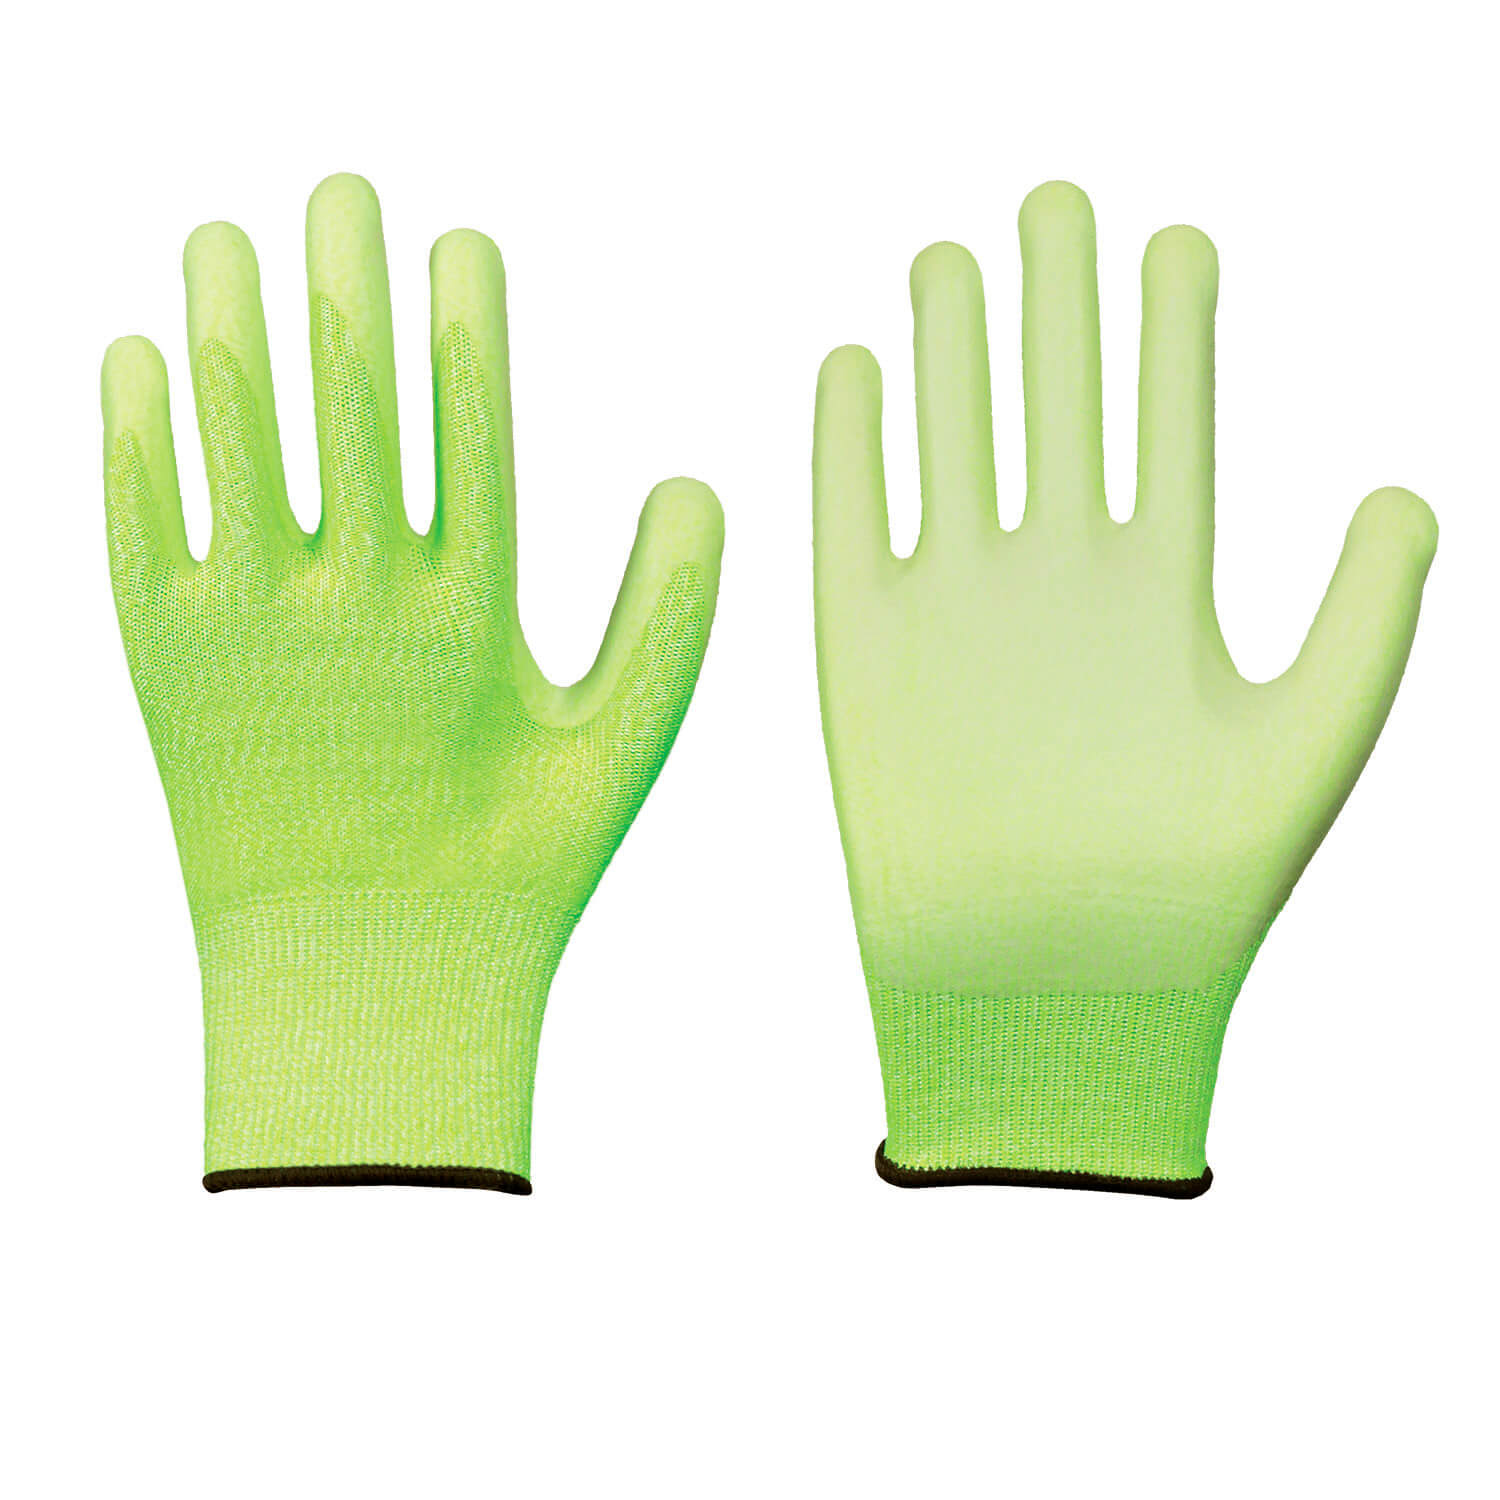 Solidstar Neon Schnittschutz-Handschuhe